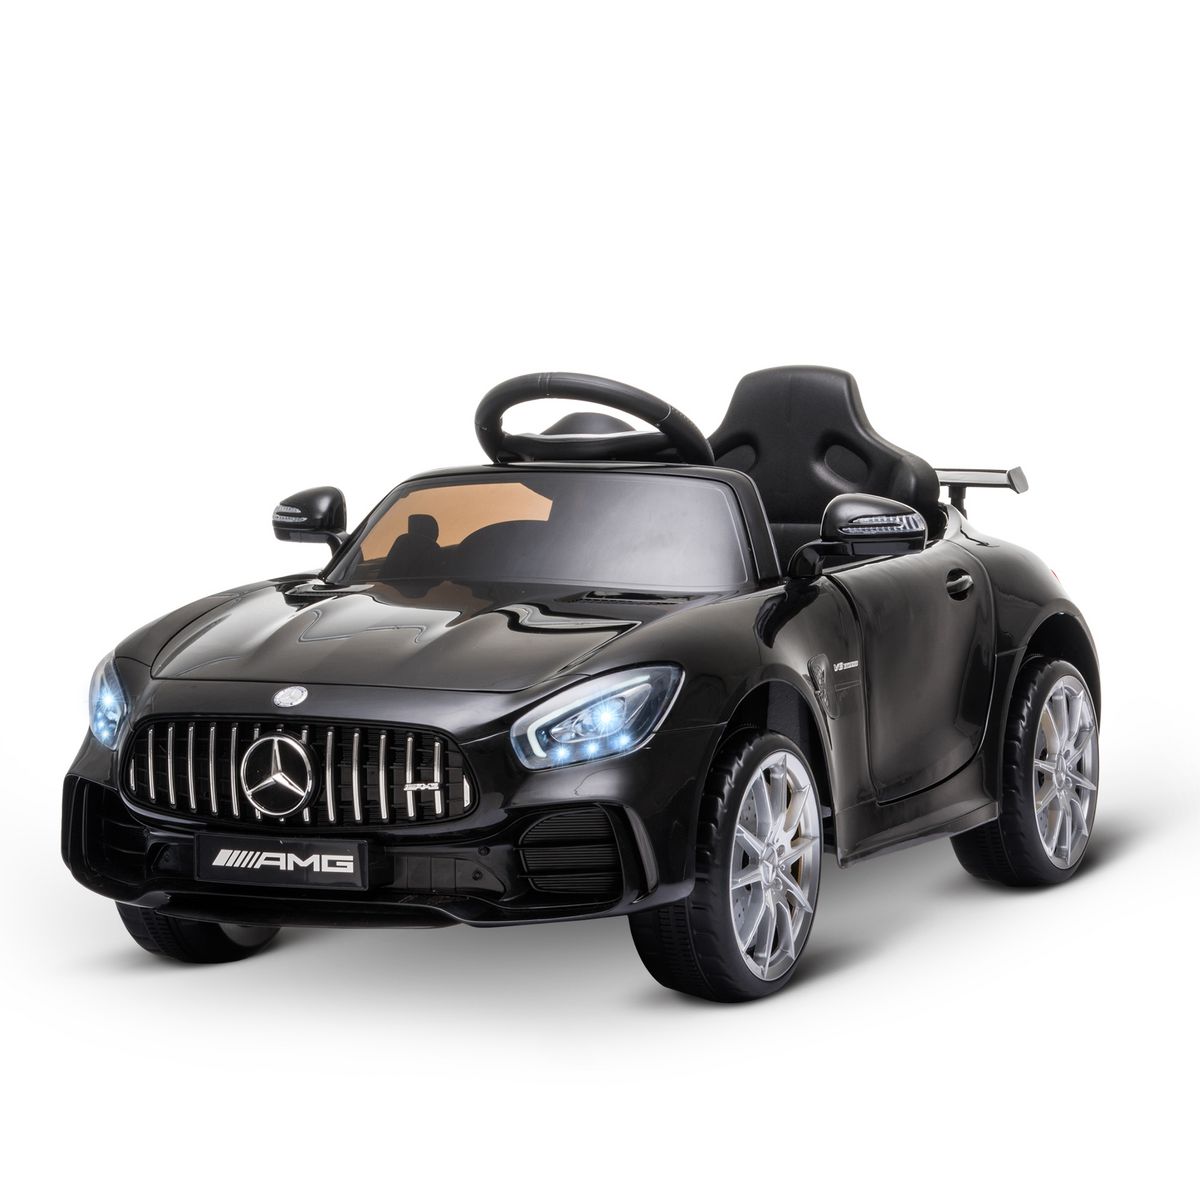 HOMCOM Voiture véhicule électrique enfant 6 V vitesse 3 Km/h télécommande  effets sonores + lumineux Mercedes GLA AMG blanc pas cher 